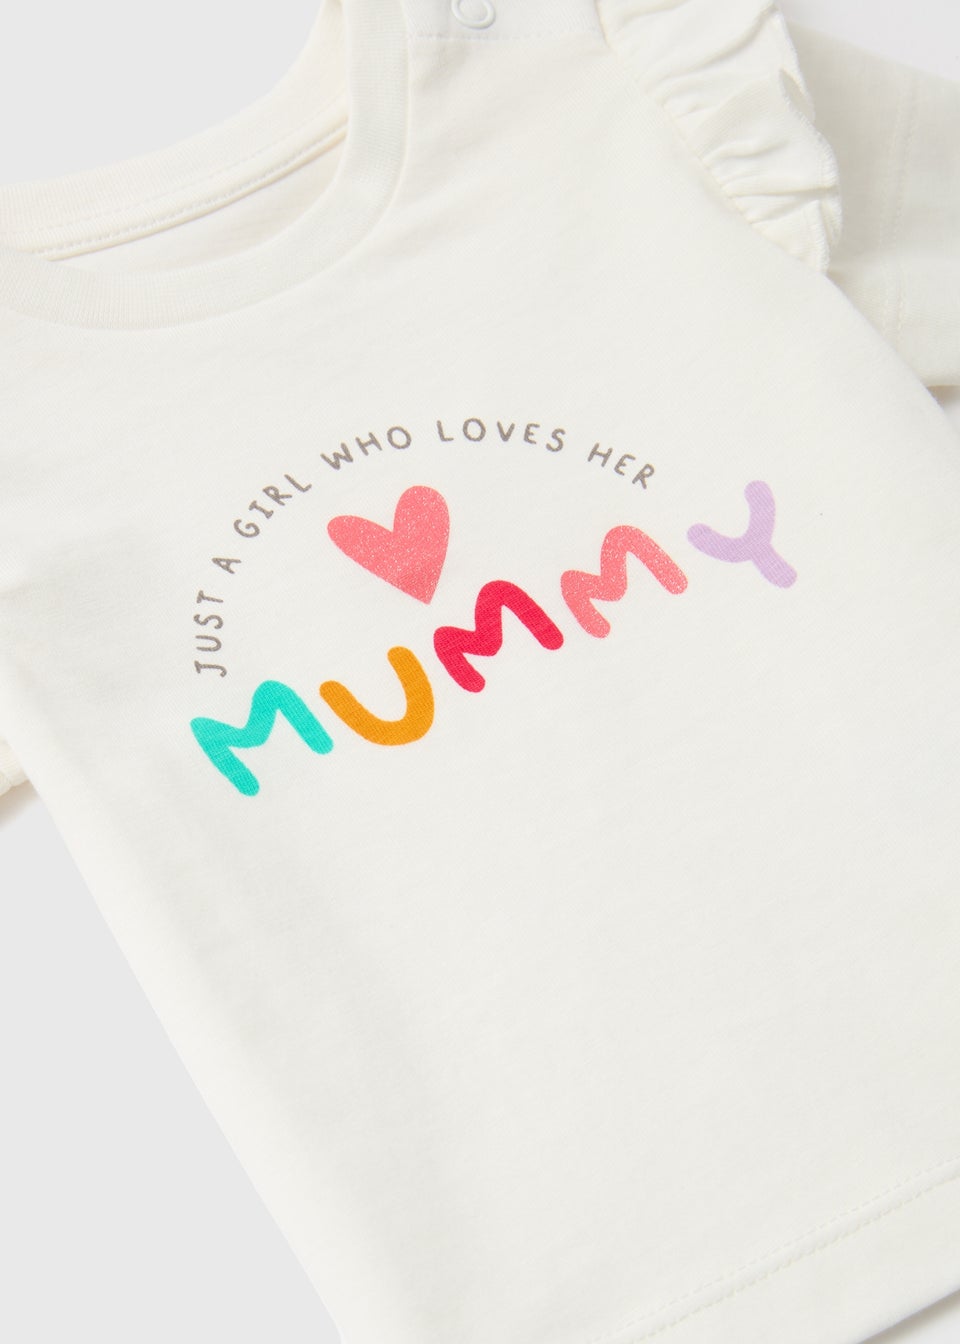 Baby Cream Mummy T-Shirt (Newborn-23mths)